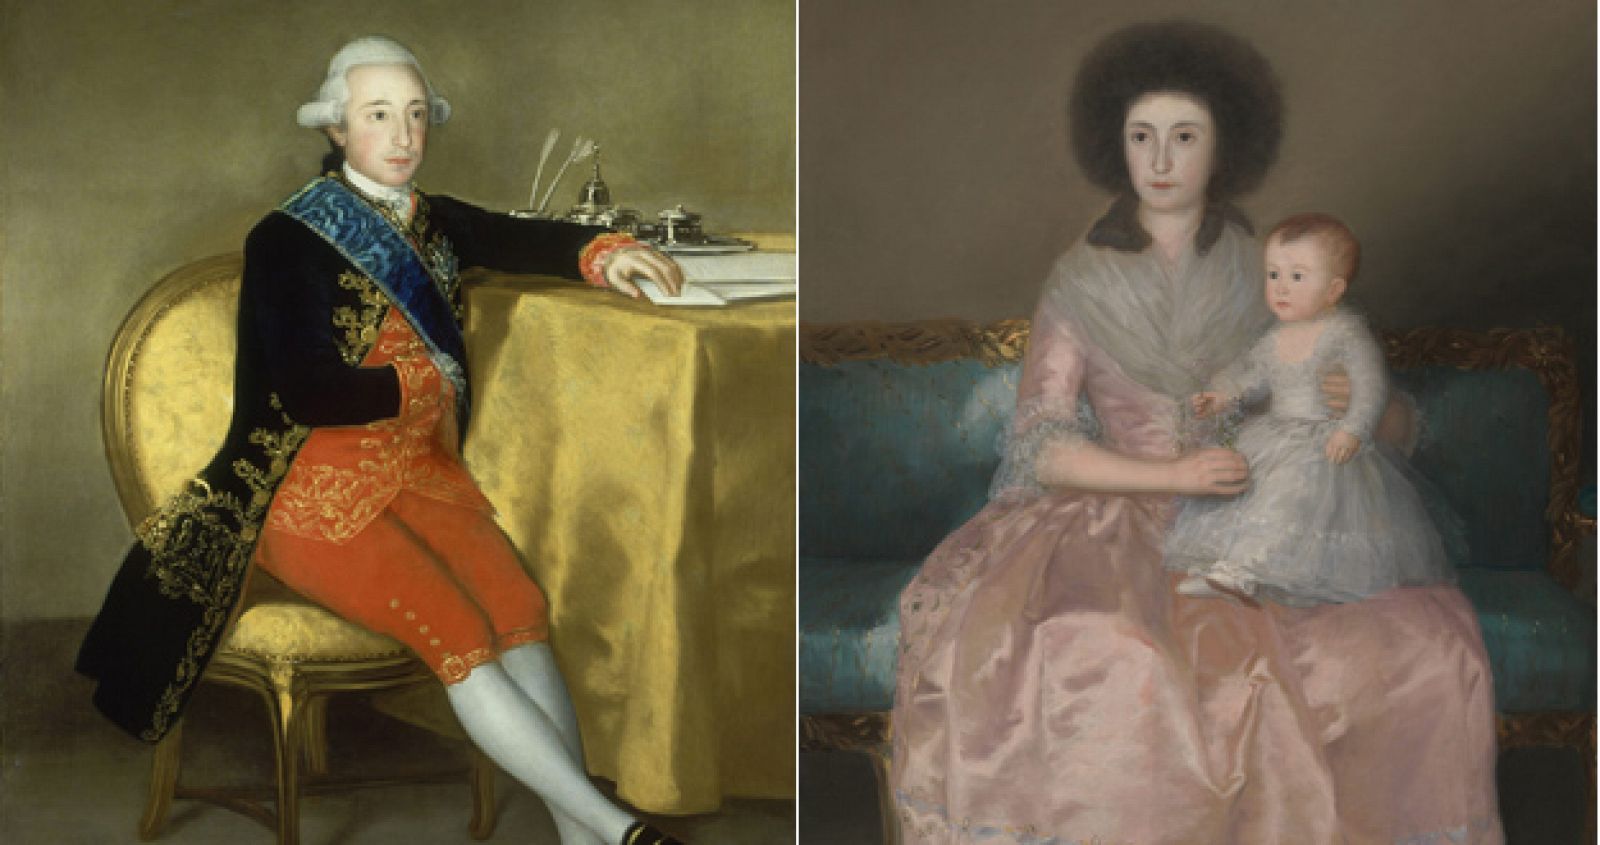 Retratos del conde de Altamira y de su esposa y su hija, dos de los lienzos de Francisco de Goya que pueden verse en la exposición del Metropolitan de Nueva York.